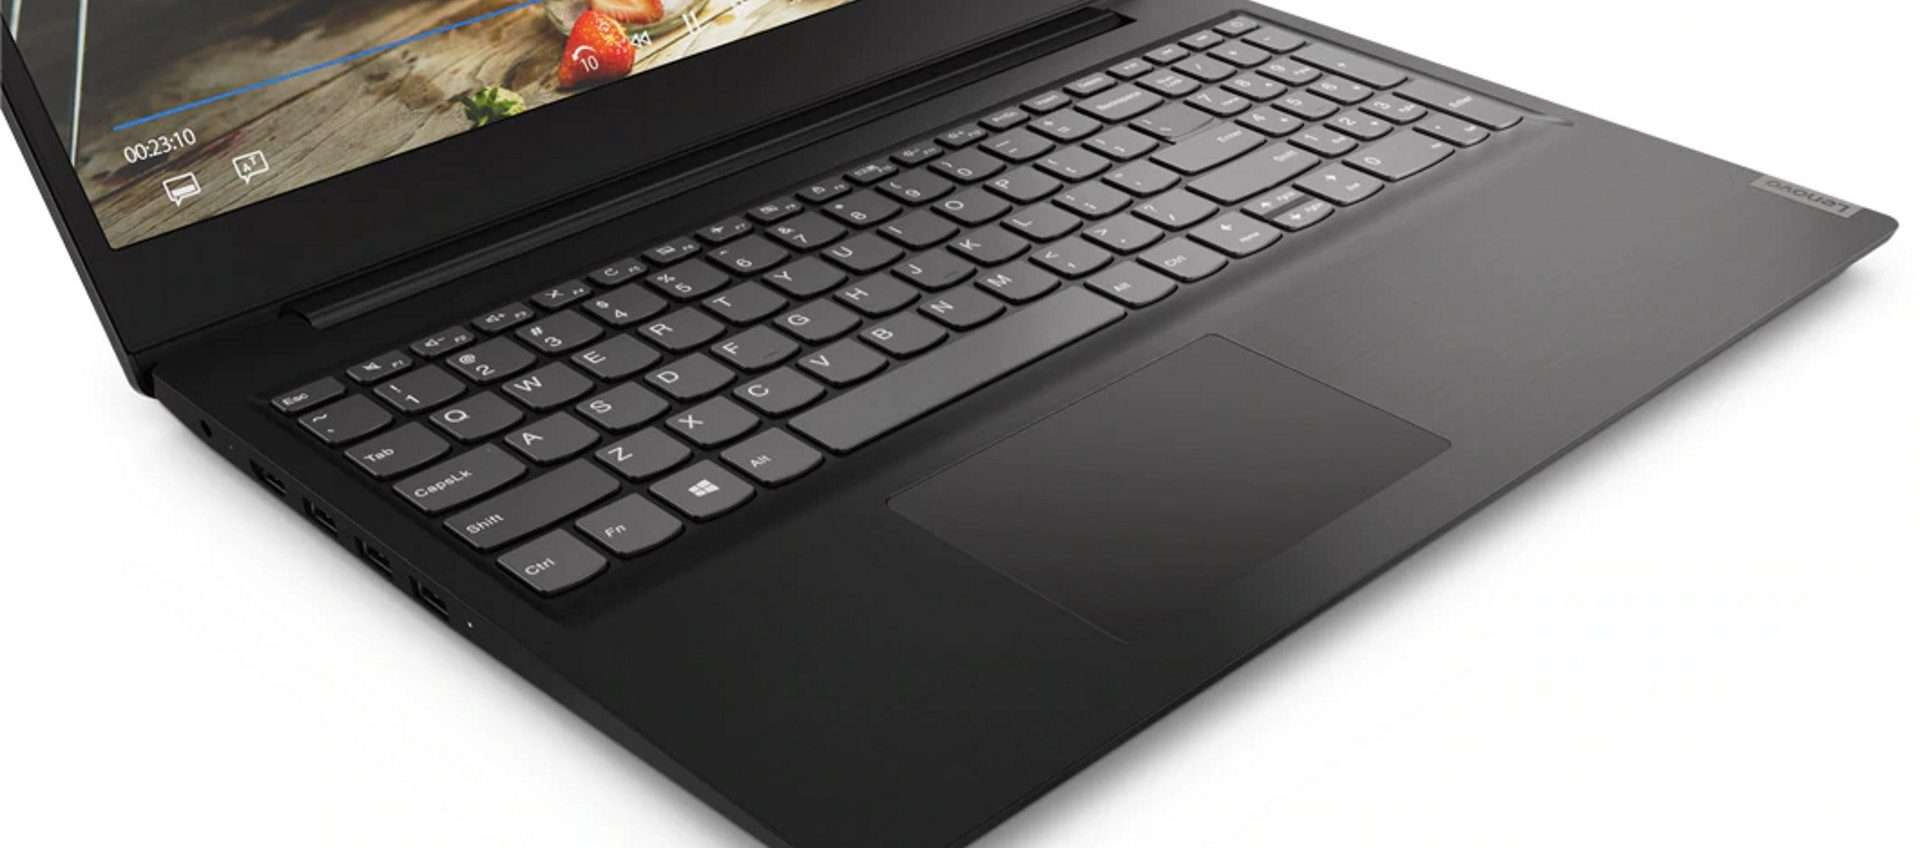 Notebook Lenovo IdeaPad S145 a 479,90 euro: offerta eBay